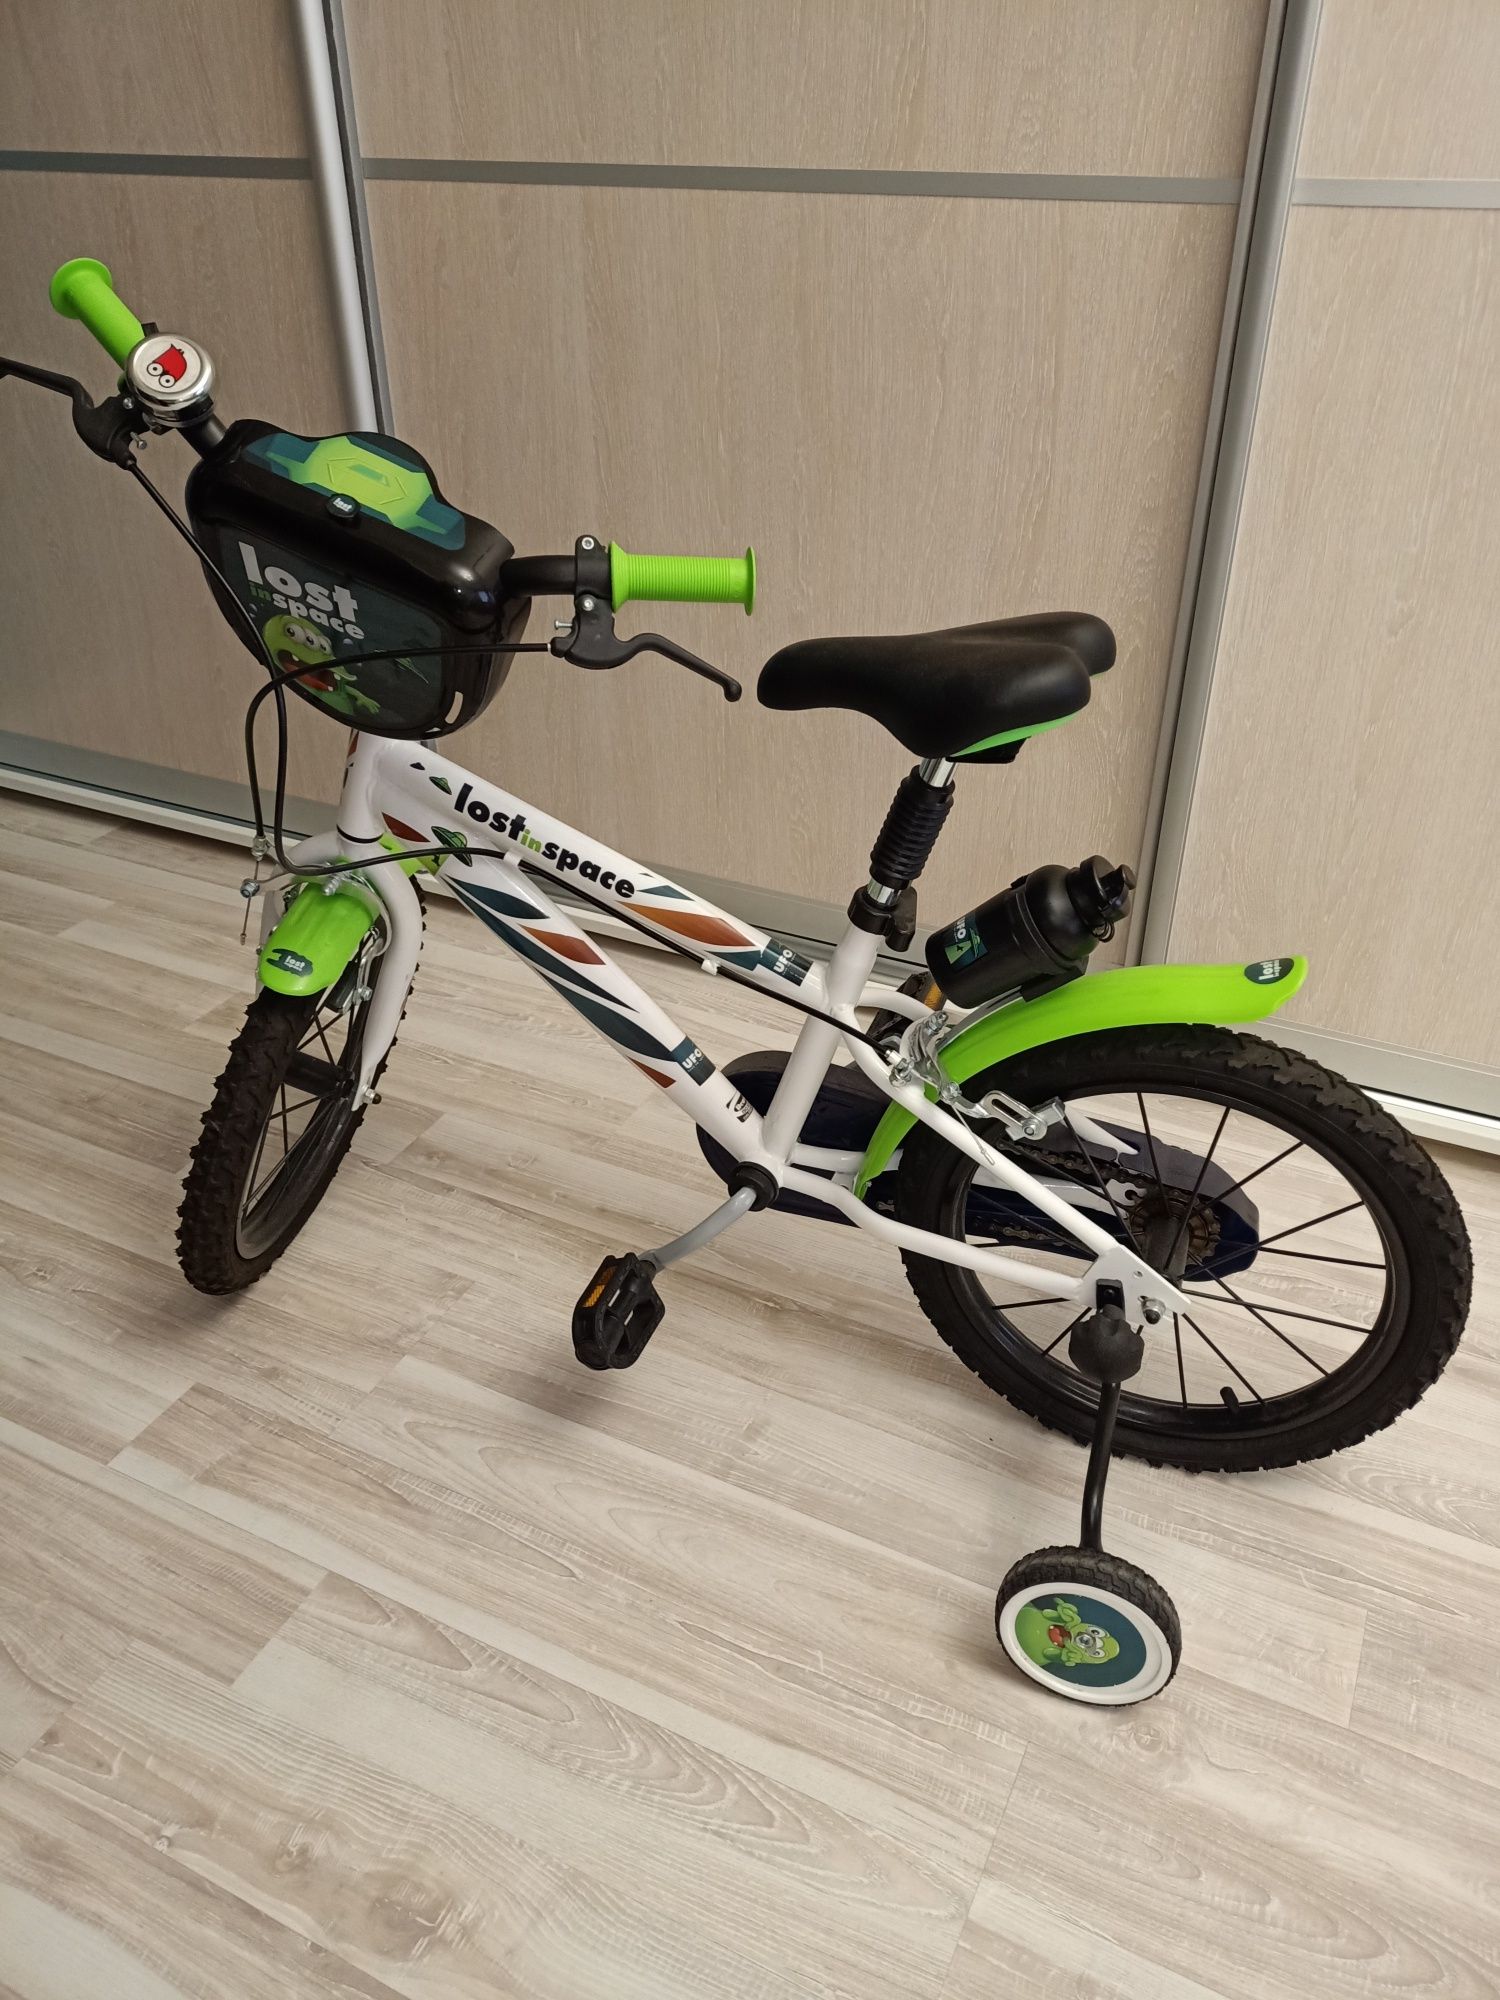 Дитячий велосипед для 6-7 років,м Хмельницький,р-н озерна,самовивіз.